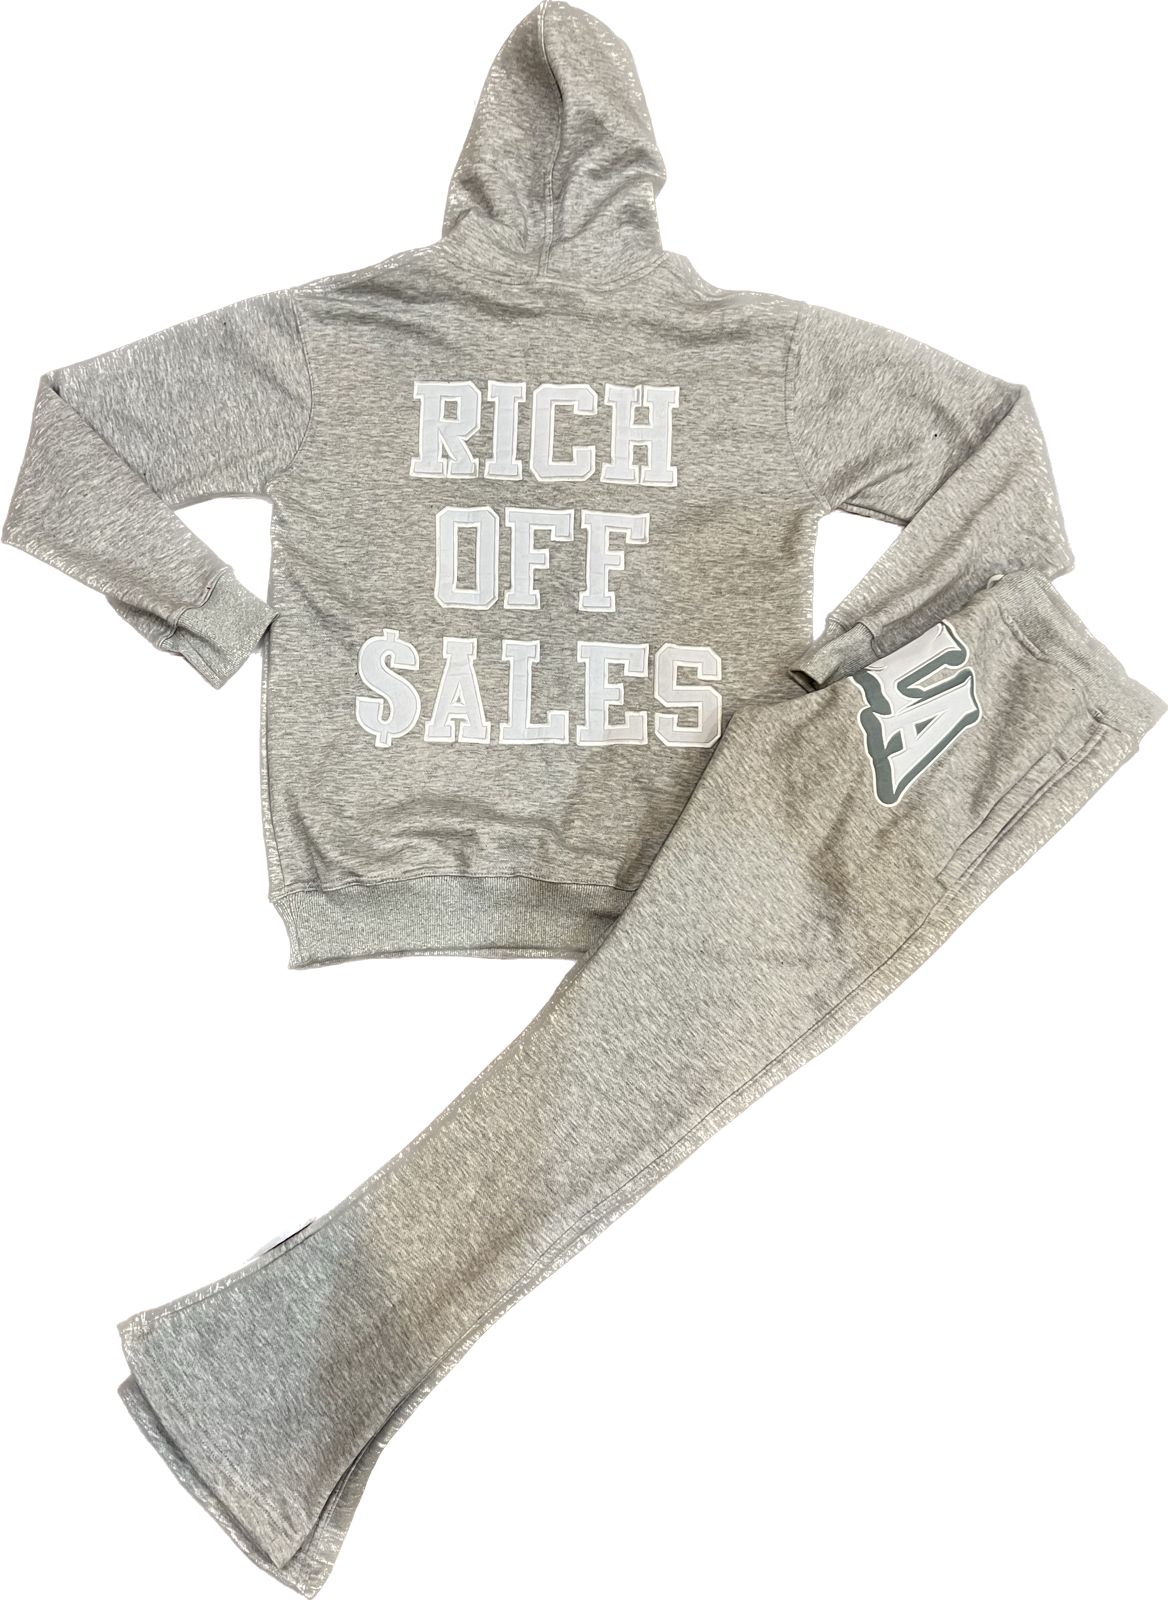 Rich Off Sales Jumpsuit (Grey)